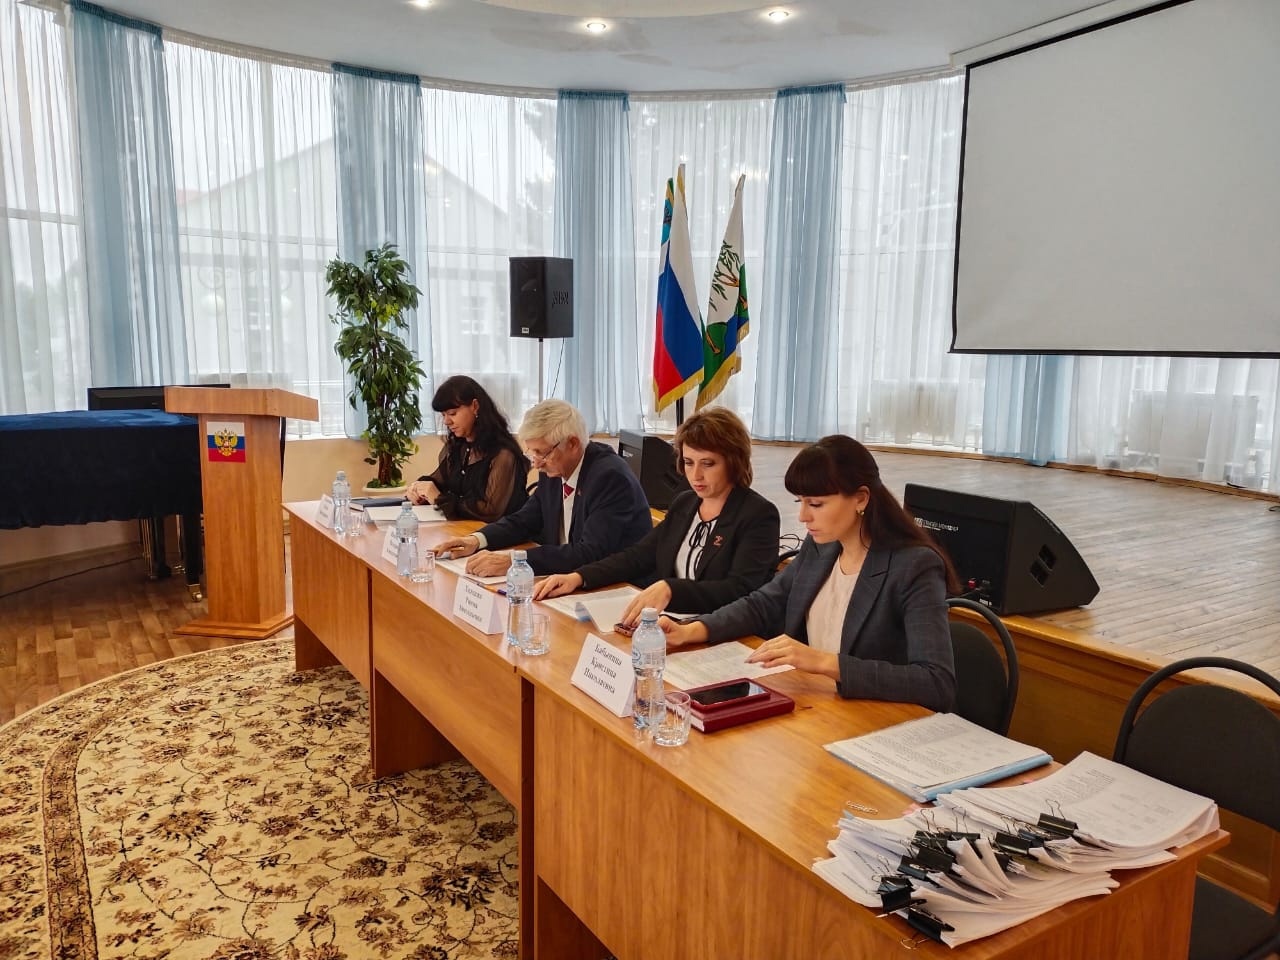 Сегодня состоялось заседание межведомственной комиссии по предоставлению единовременной денежной выплаты гражданам РФ, постоянно проживающим на территории Белгородской области